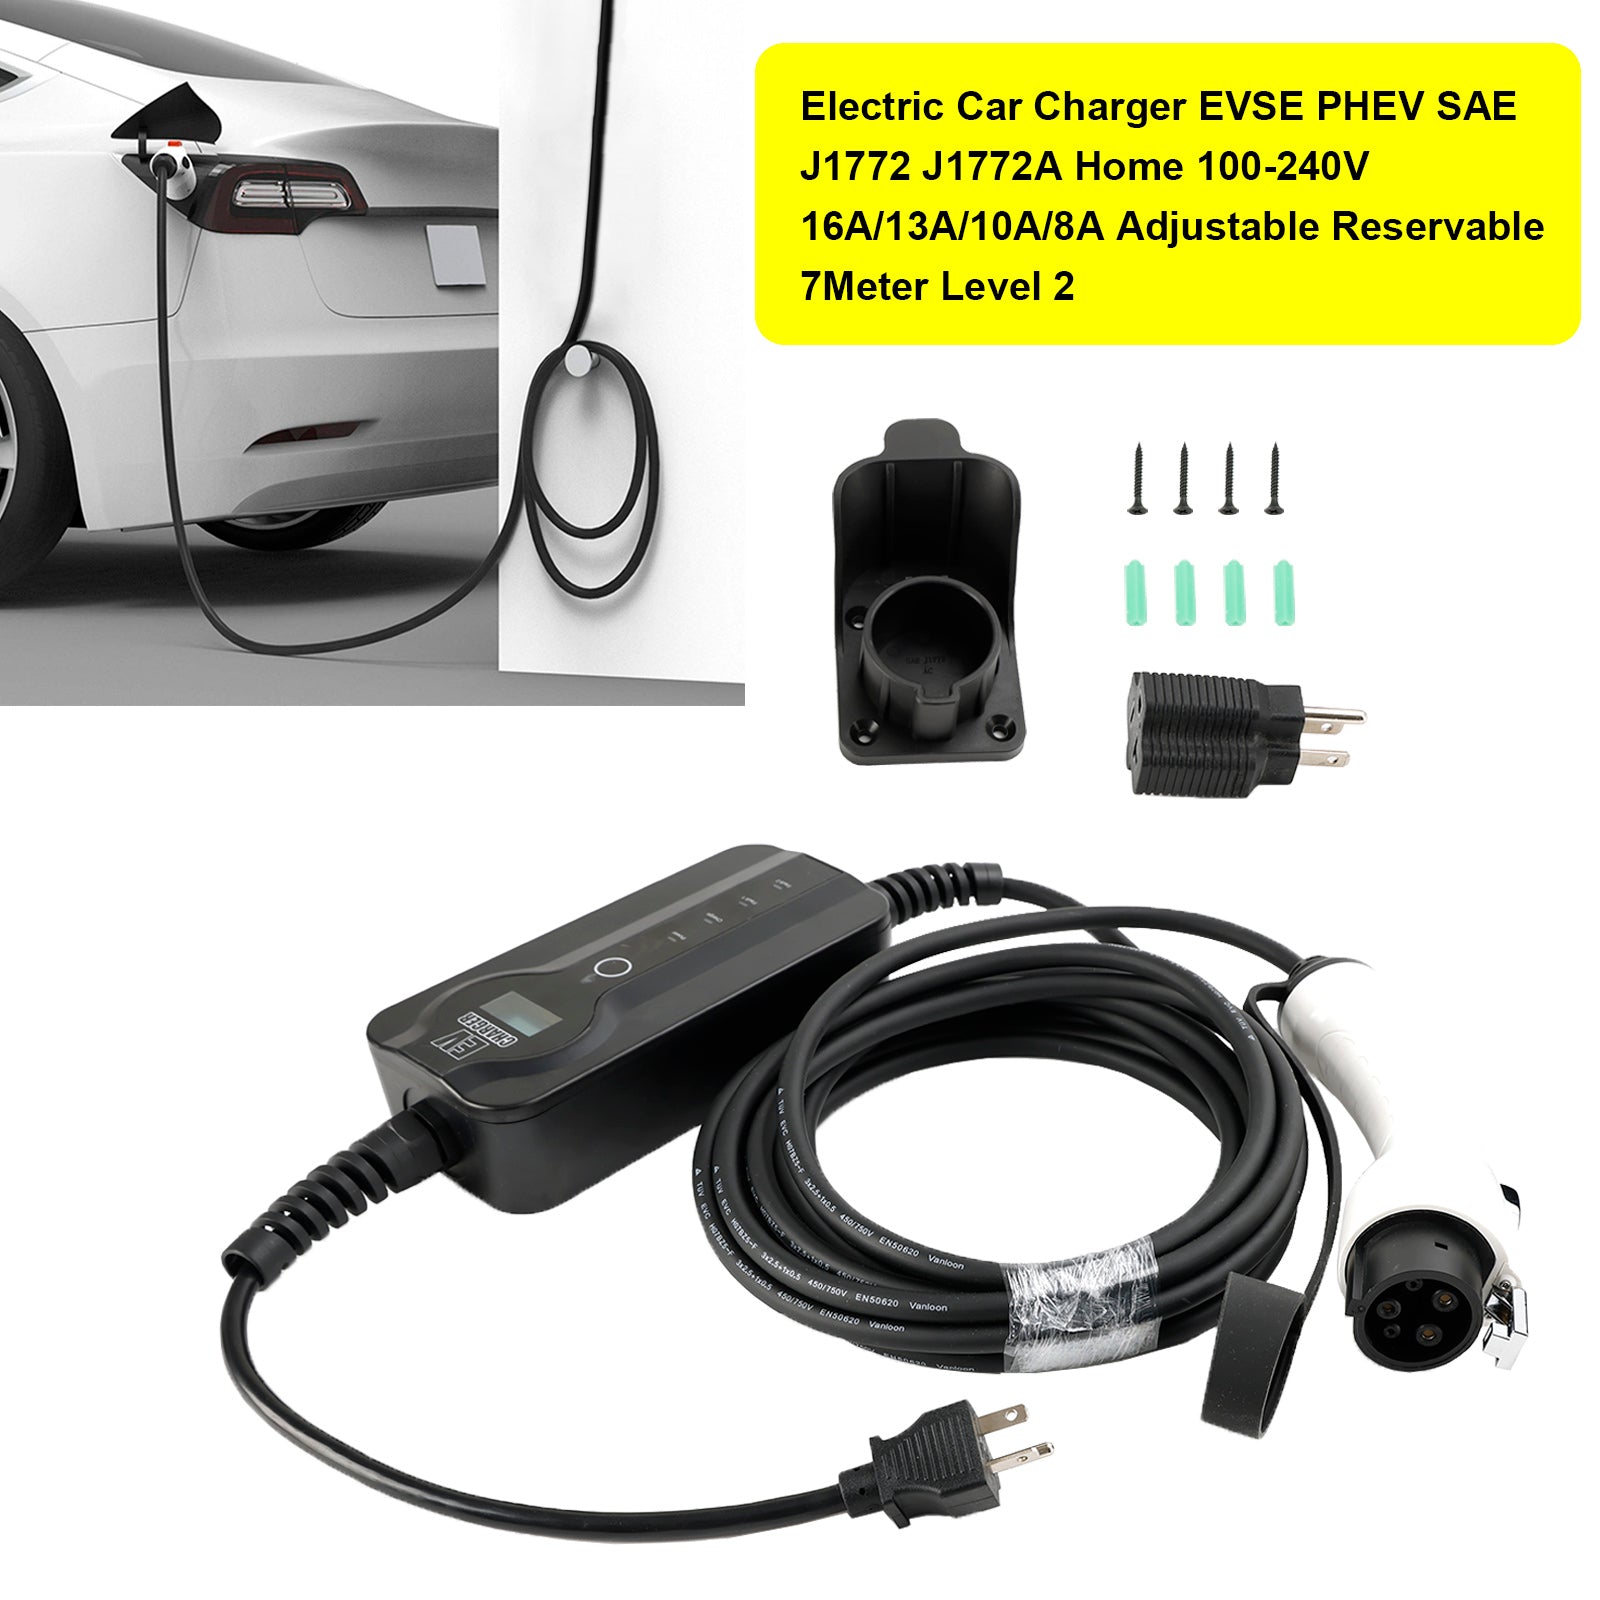 EV J1772 J1772A Electric Car Charger Home 100-240V 16A Adjustable 7Meter Level 2